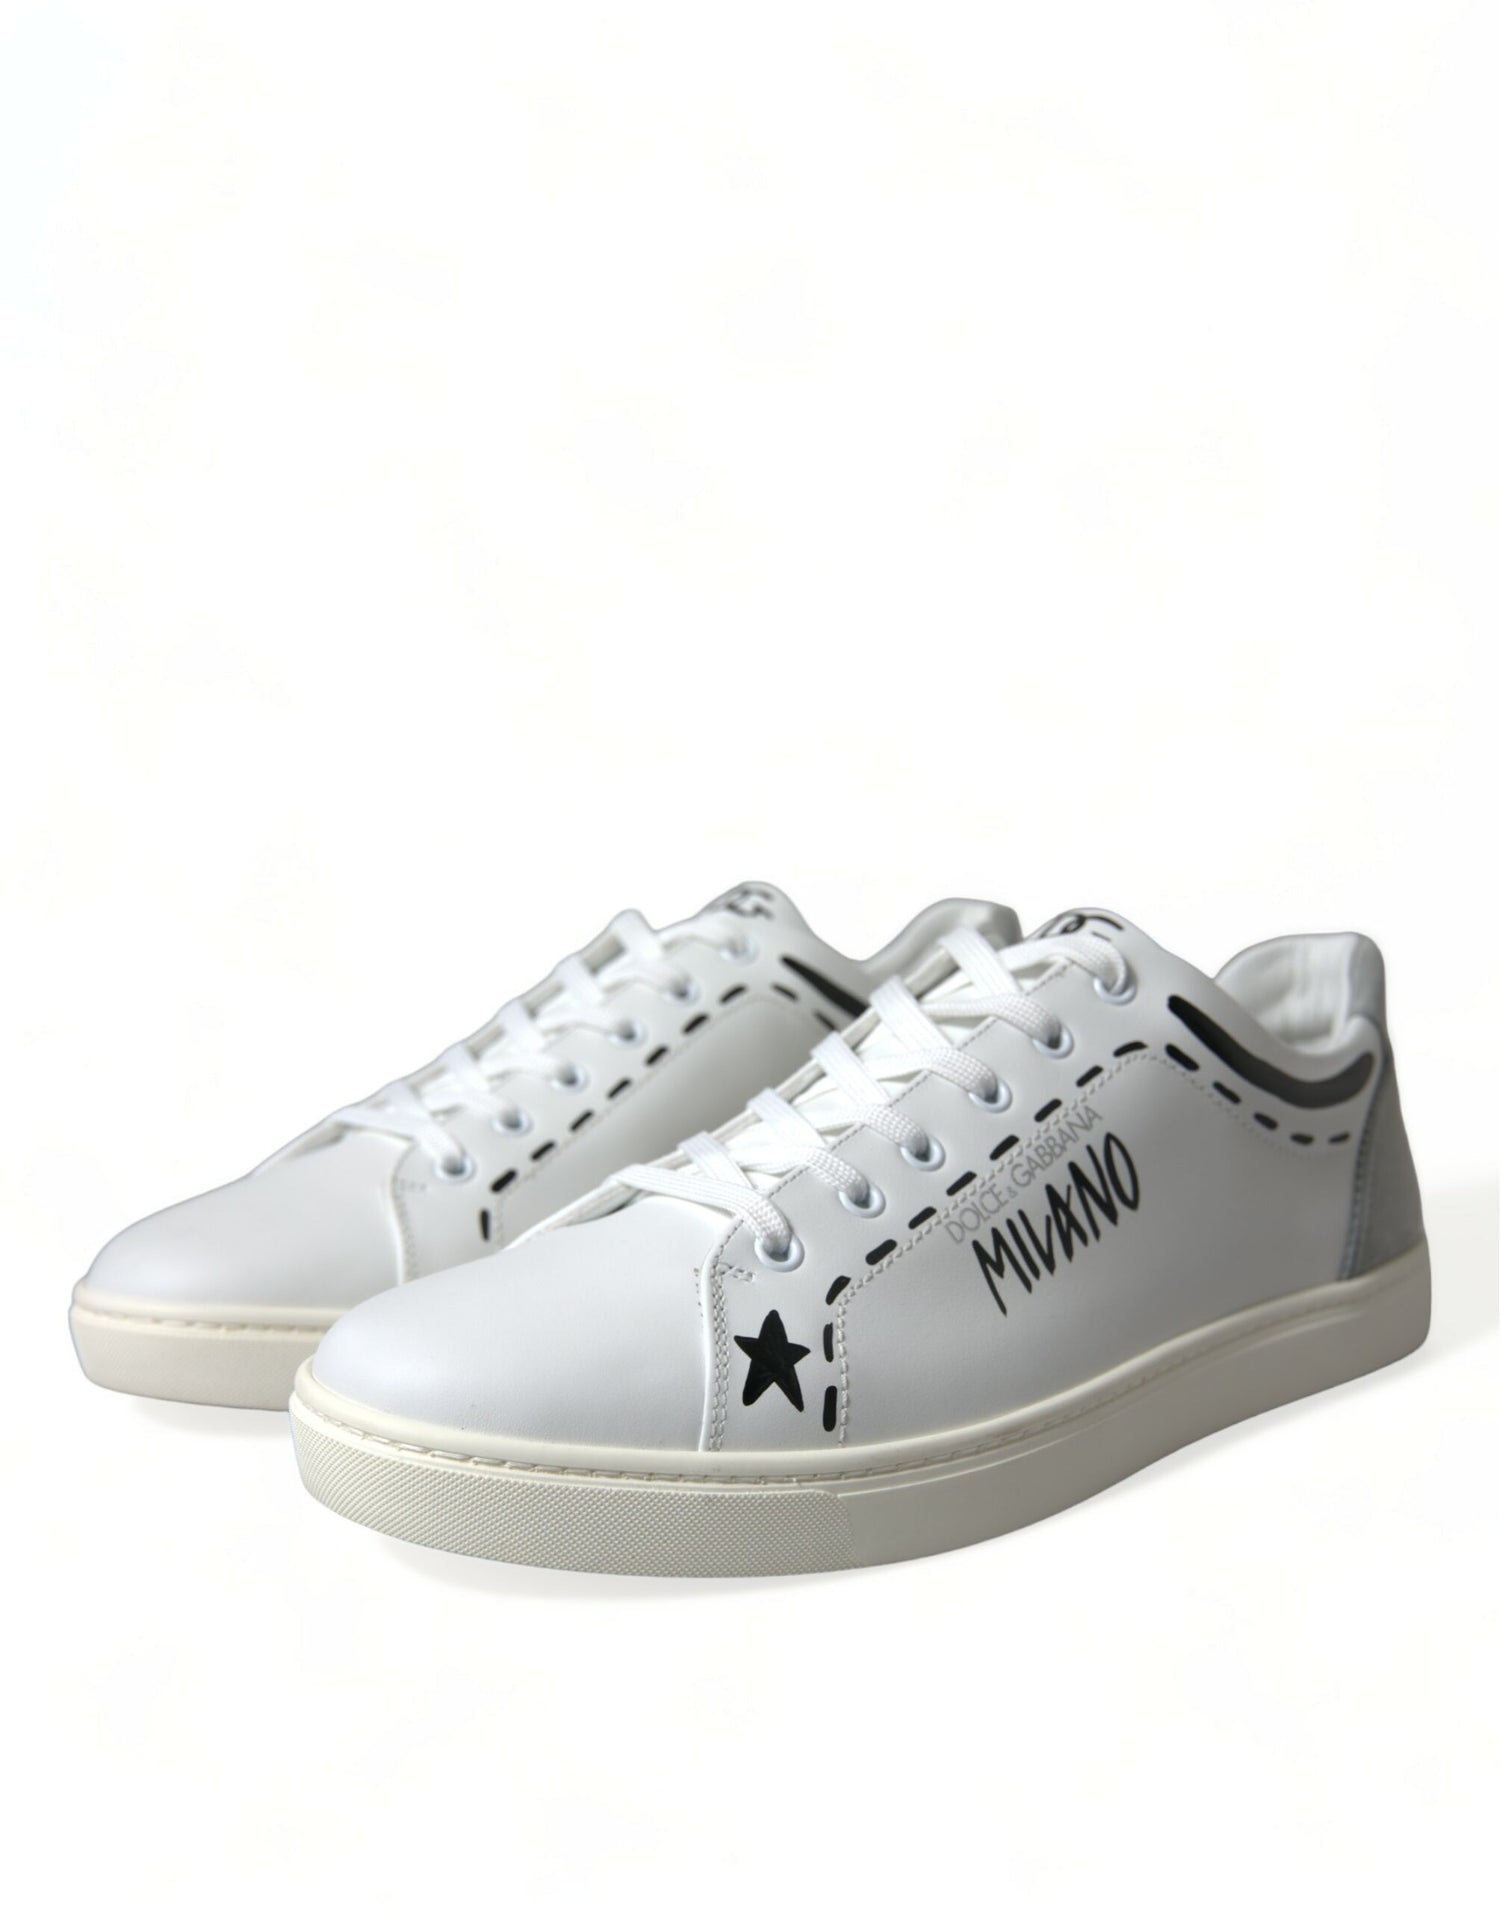 Dolce & Gabbana White Gray Leather LOVE Milano Sneakers Shoes - DEA STILOSA MILANO